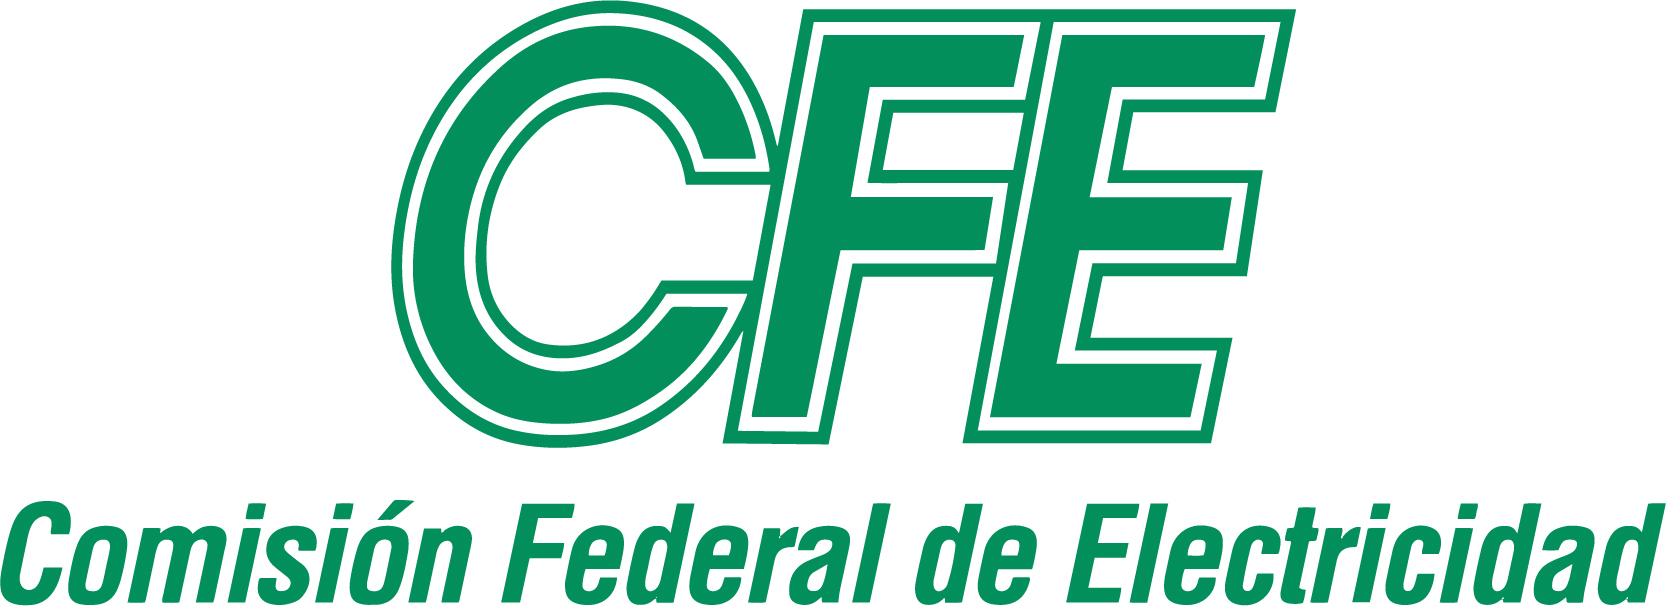 Comisión_Federal_de_Electricidad.jpg